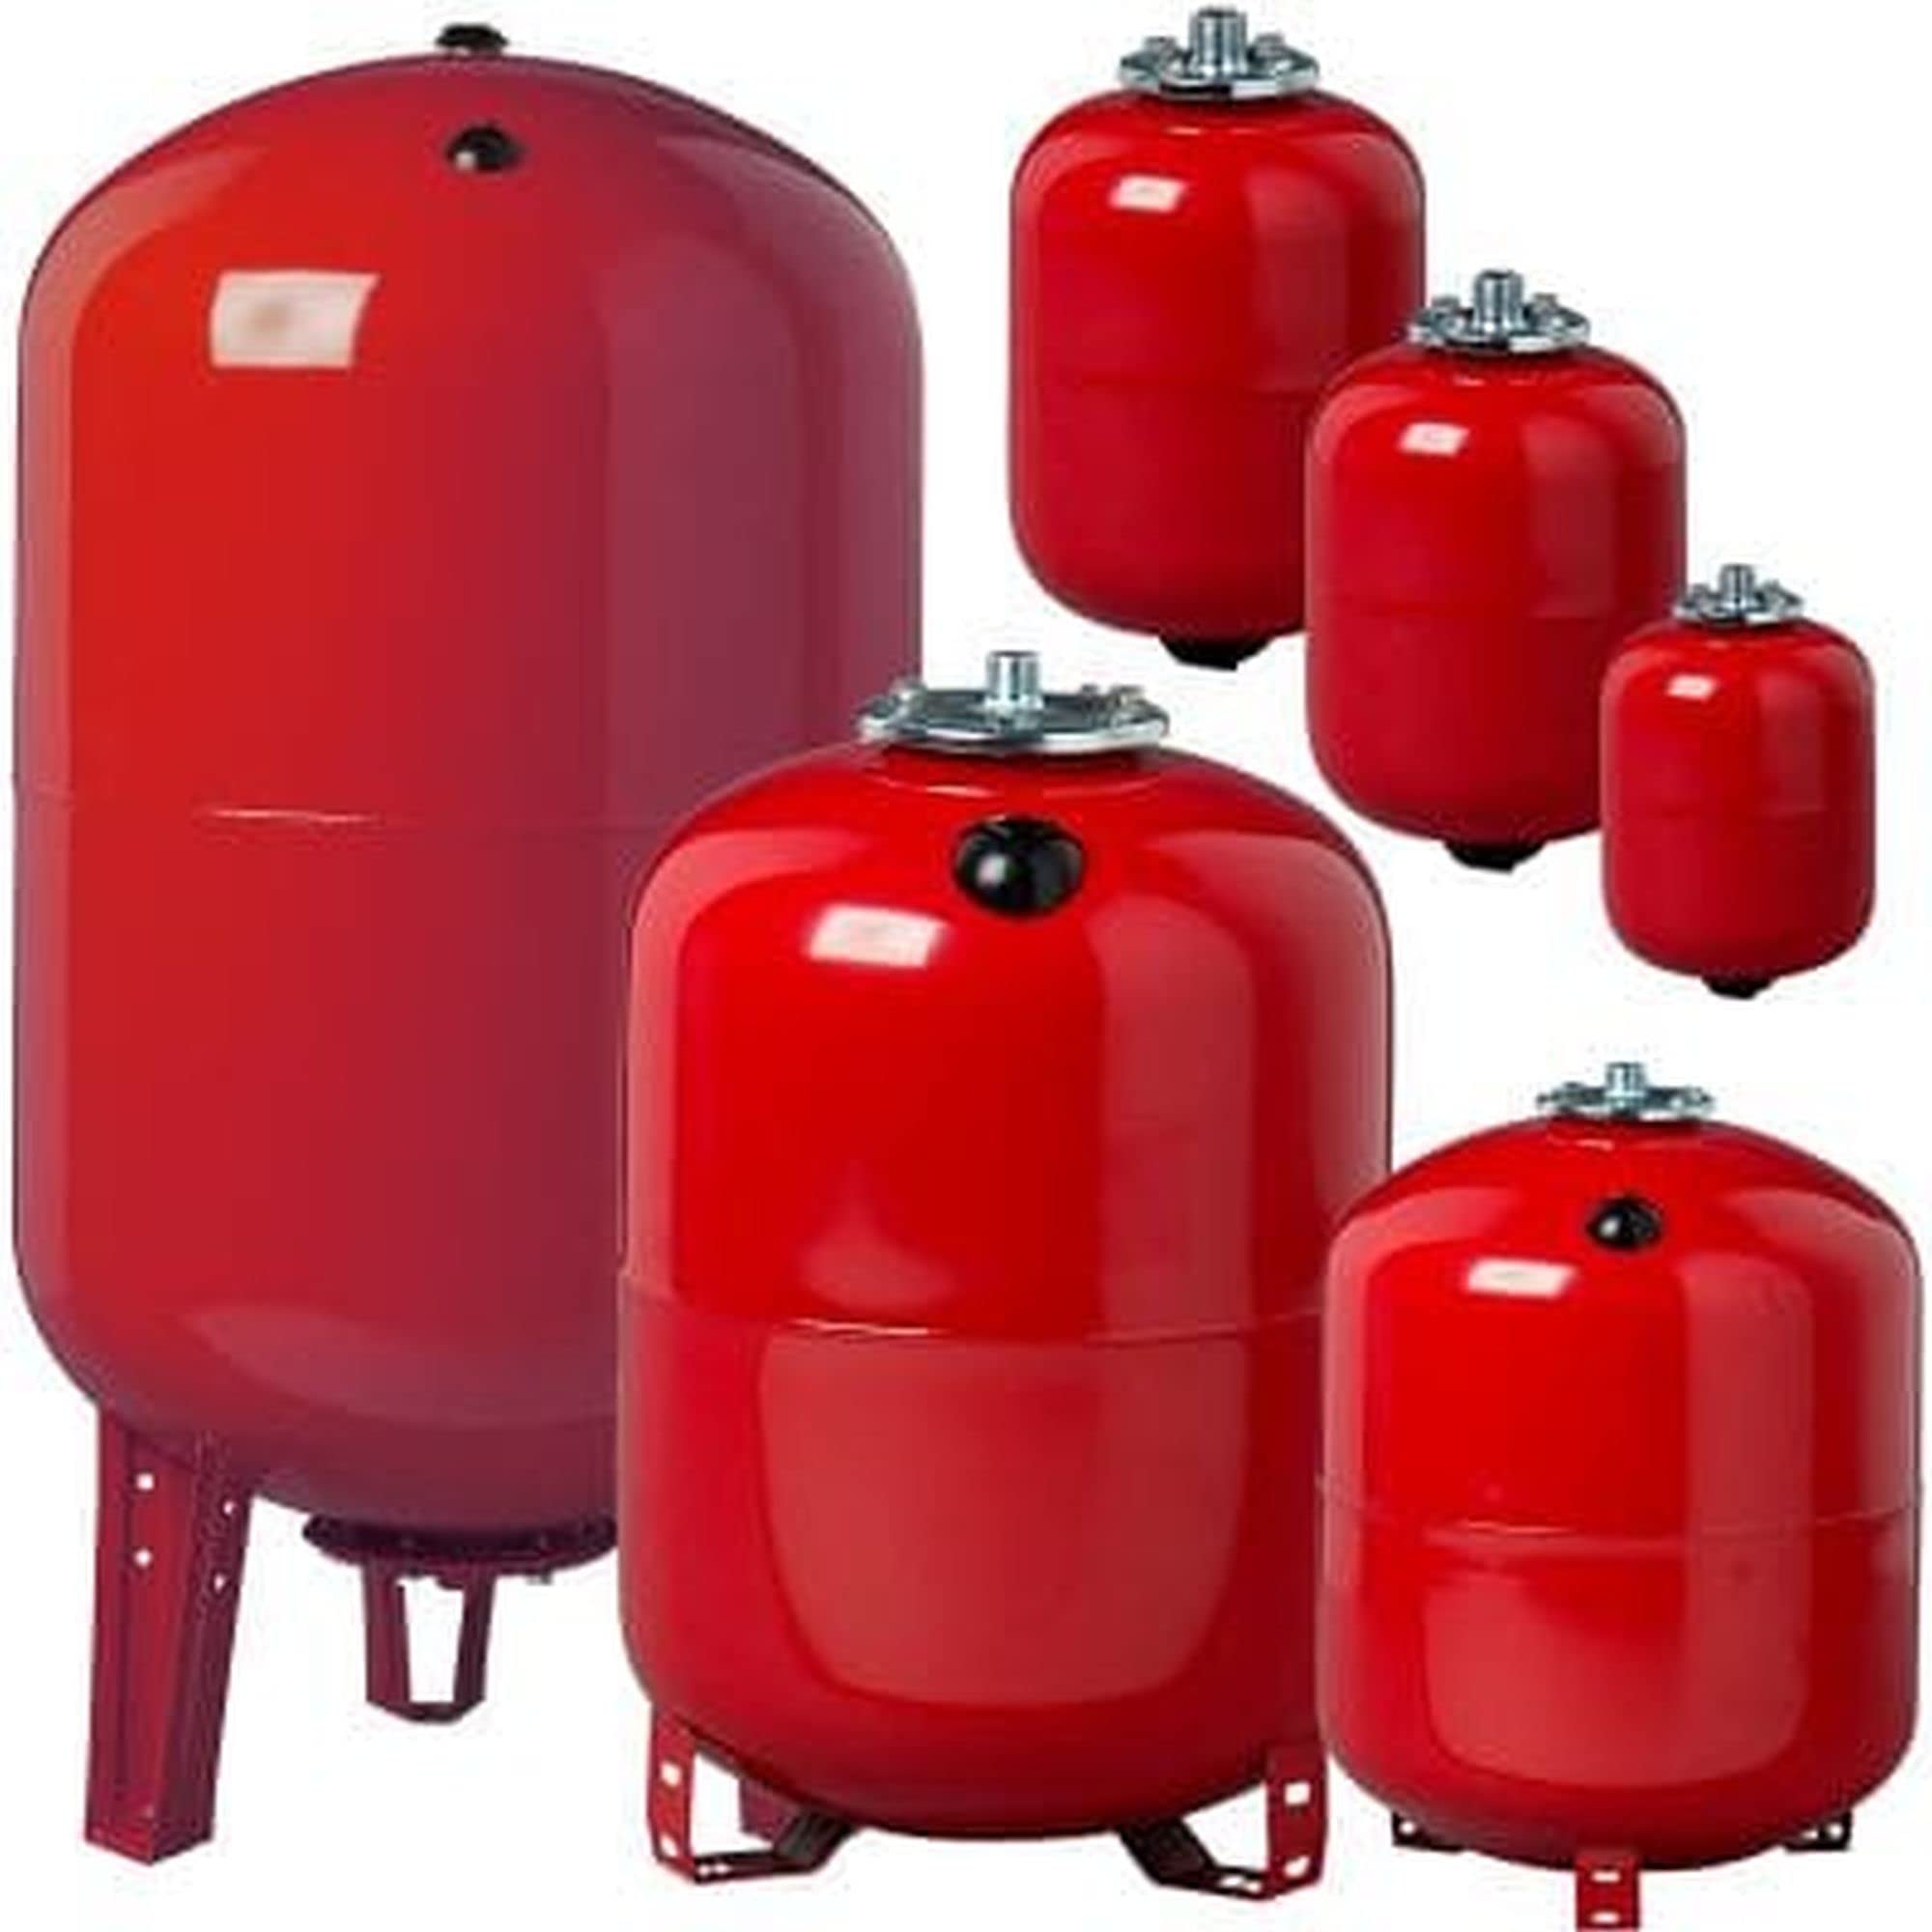 Heizung Ausdehnungsgefäße von 8 Liter bis 500 Liter - Ausgleichsbehälter für konstanten Druck in der Anlage und sicheren Betrieb von Druck- Heiz und Kühlgeräten (80 Liter)